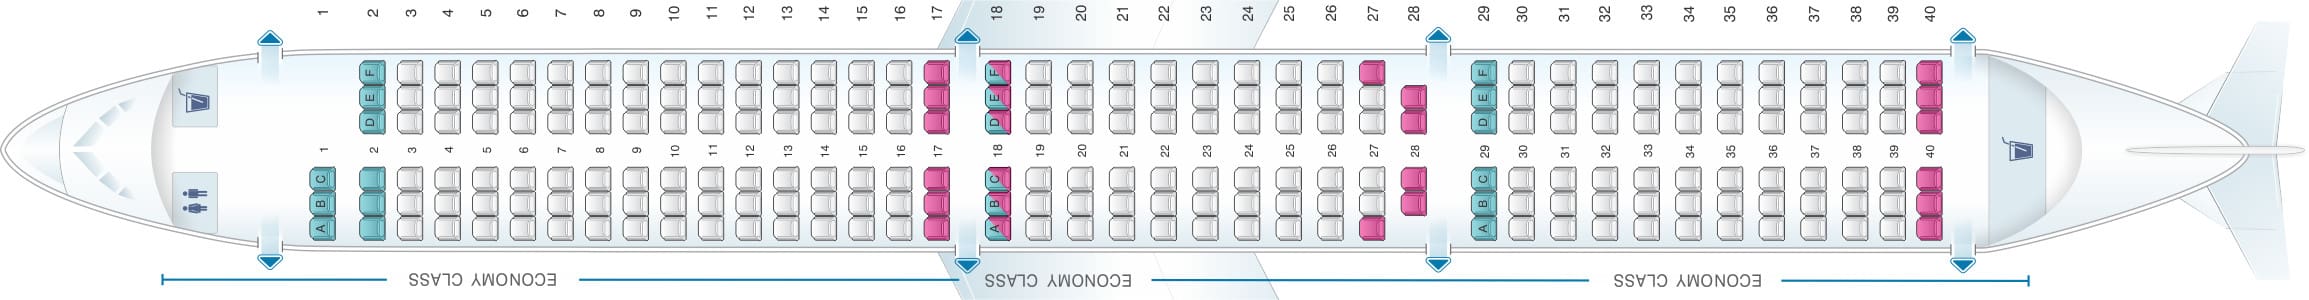 EasyJet A321Neo Seating Plan